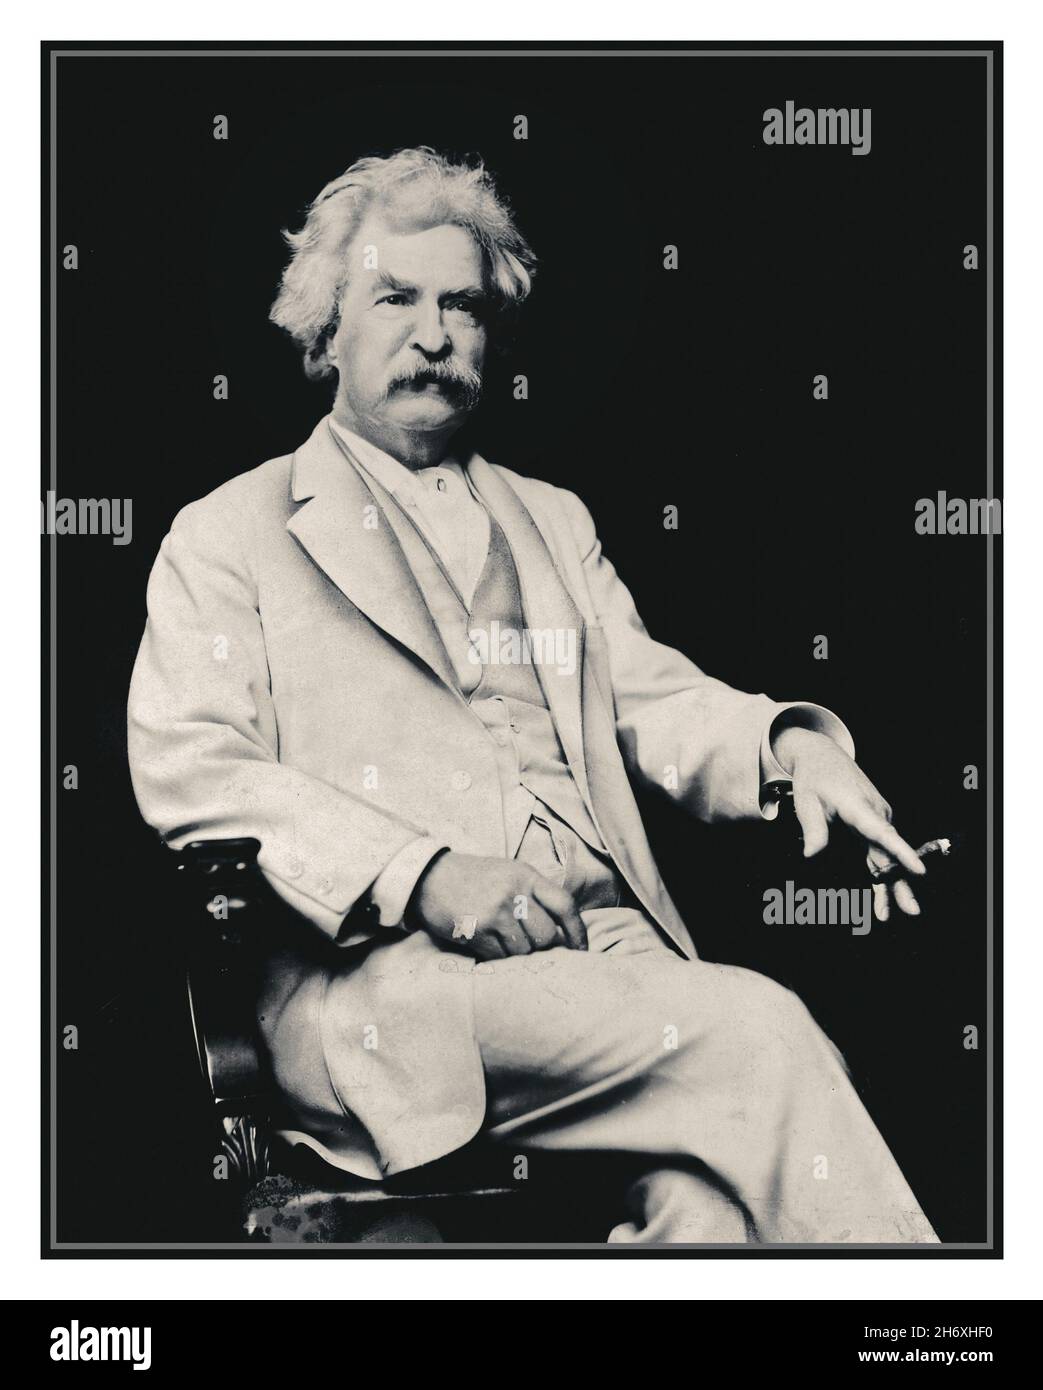 MARK TWAIN Vintage 1900s Archivio ritratto di Mark Twain, ritratto di tre quarti di lunghezza, seduto, rivolto leggermente a destra, con sigaro in mano] Data di creazione/pubblicazione: C1907.1 stampa archivio fotografico. Foto Stock